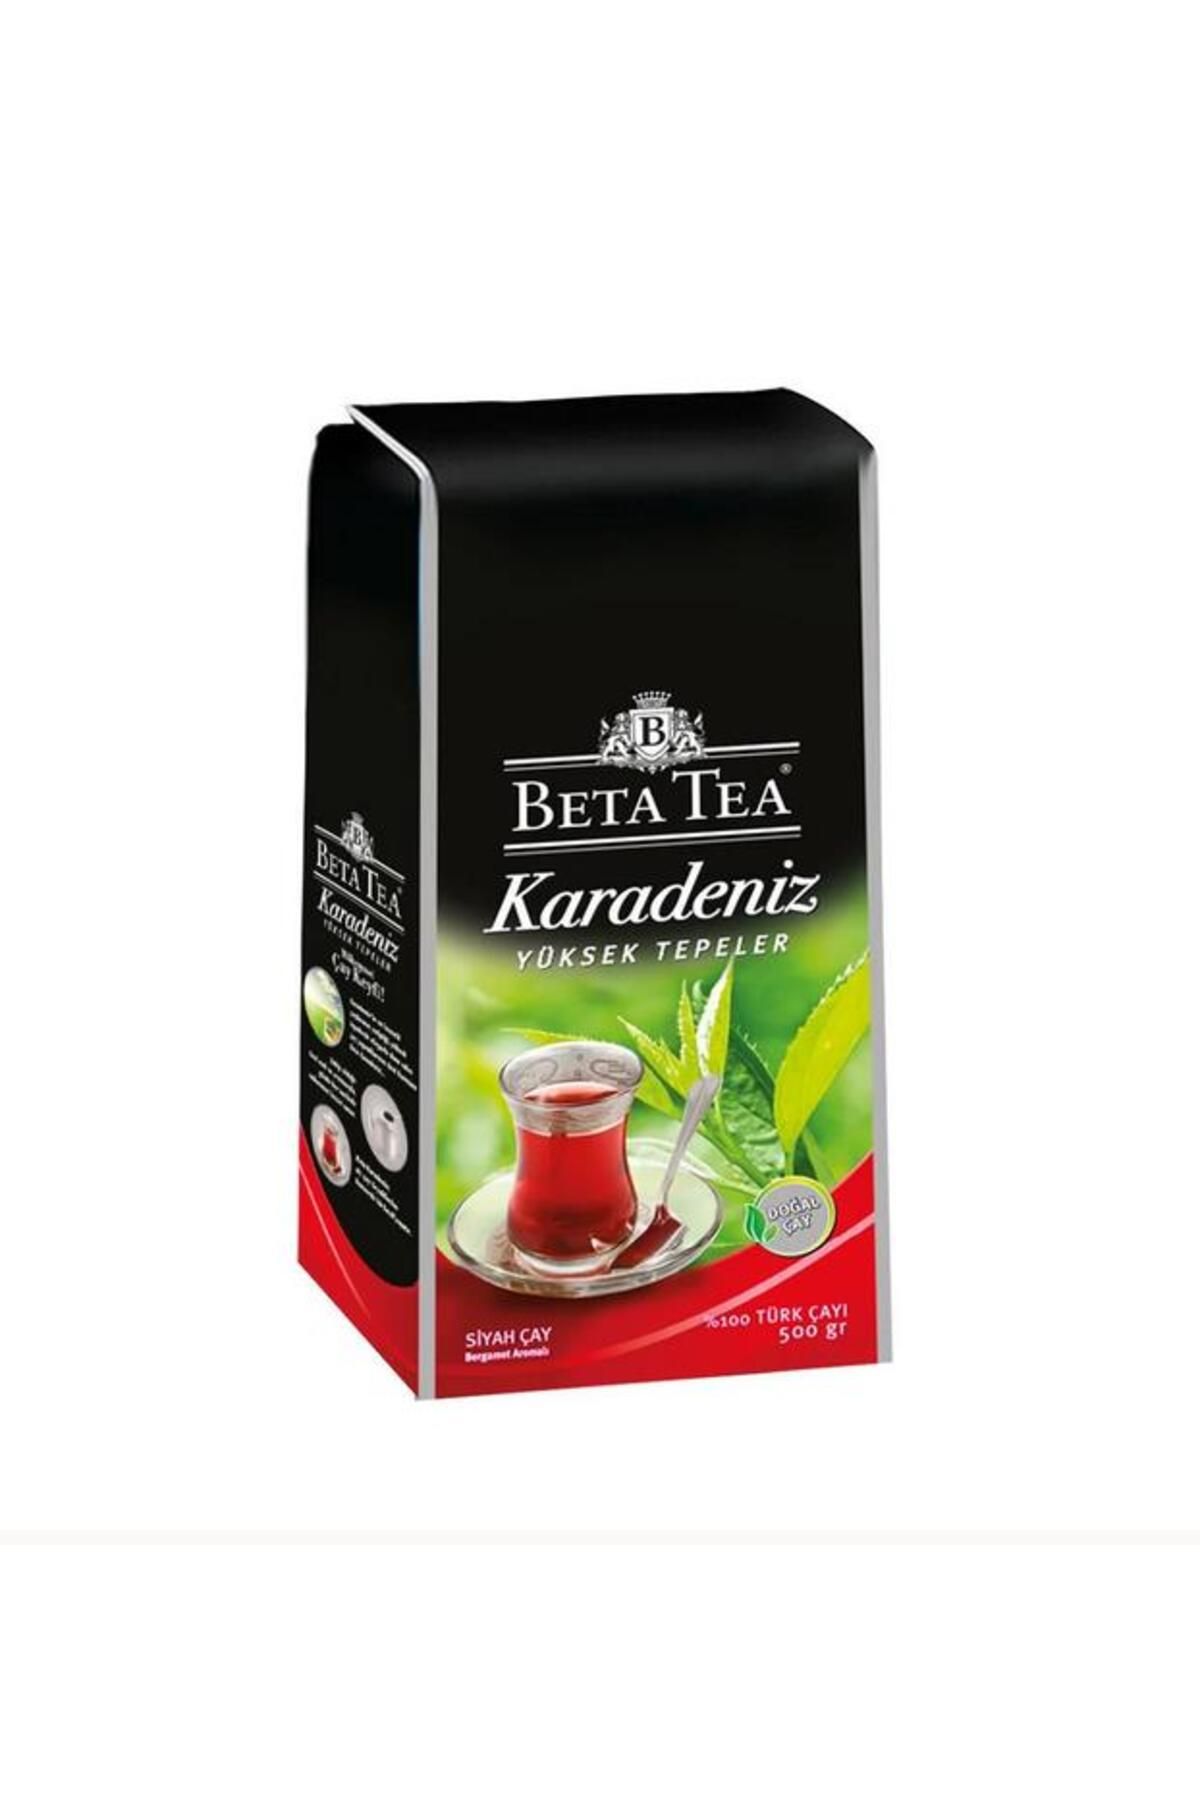 Beta Tea BETA Karadeniz Yüksek Tepeler TÜRK ÇAYI 500gr